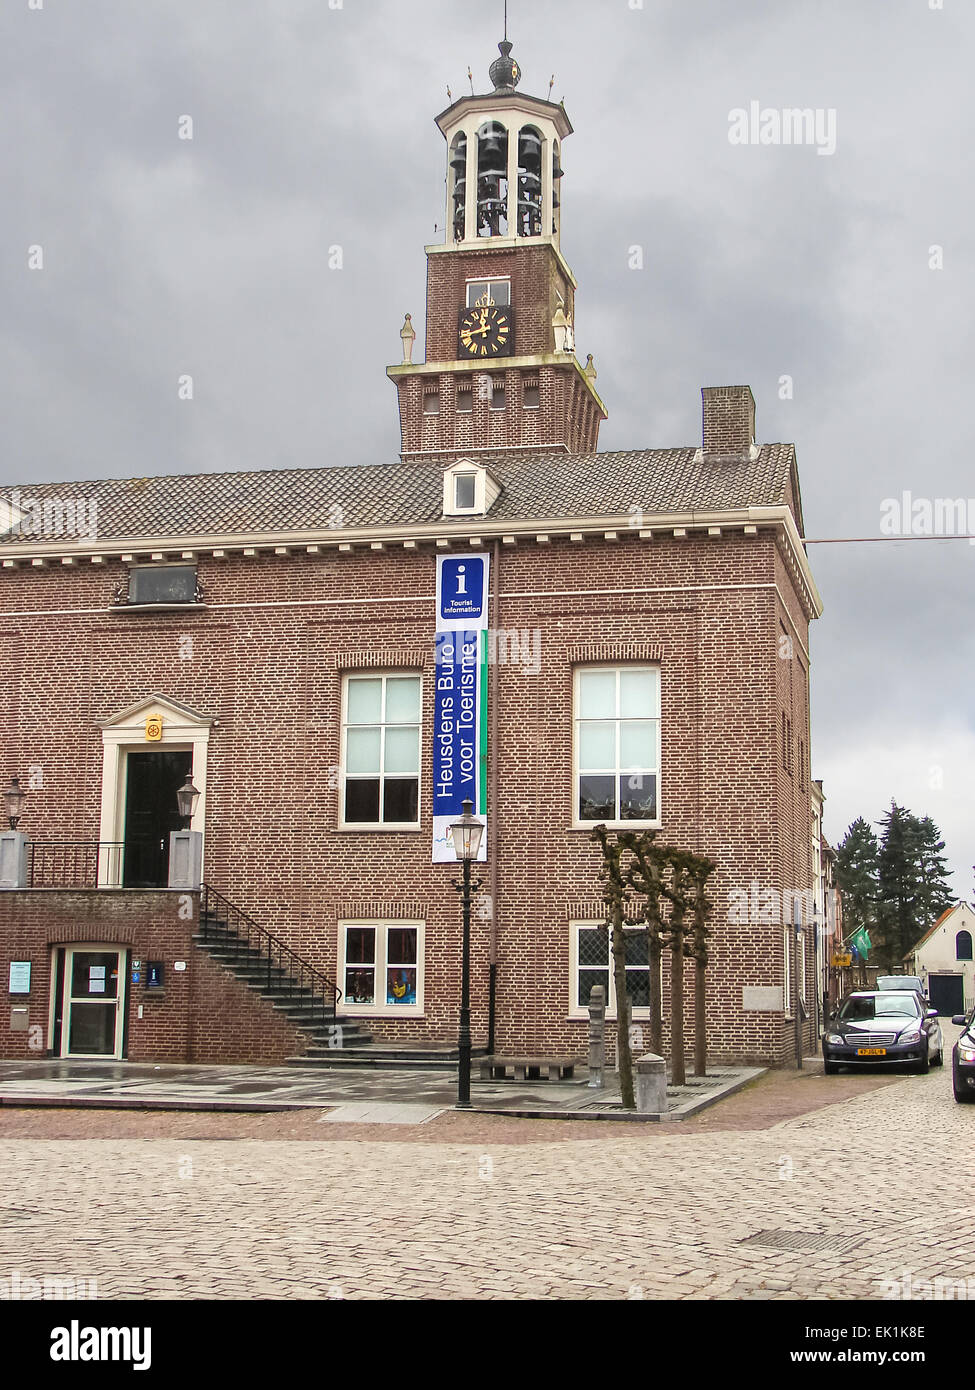 Heusden, Paesi Bassi - 18 febbraio 2012 : municipio nella città olandese di heusden. Paesi Bassi . La città si trova nella provincia del Brabante settentrionale Foto Stock